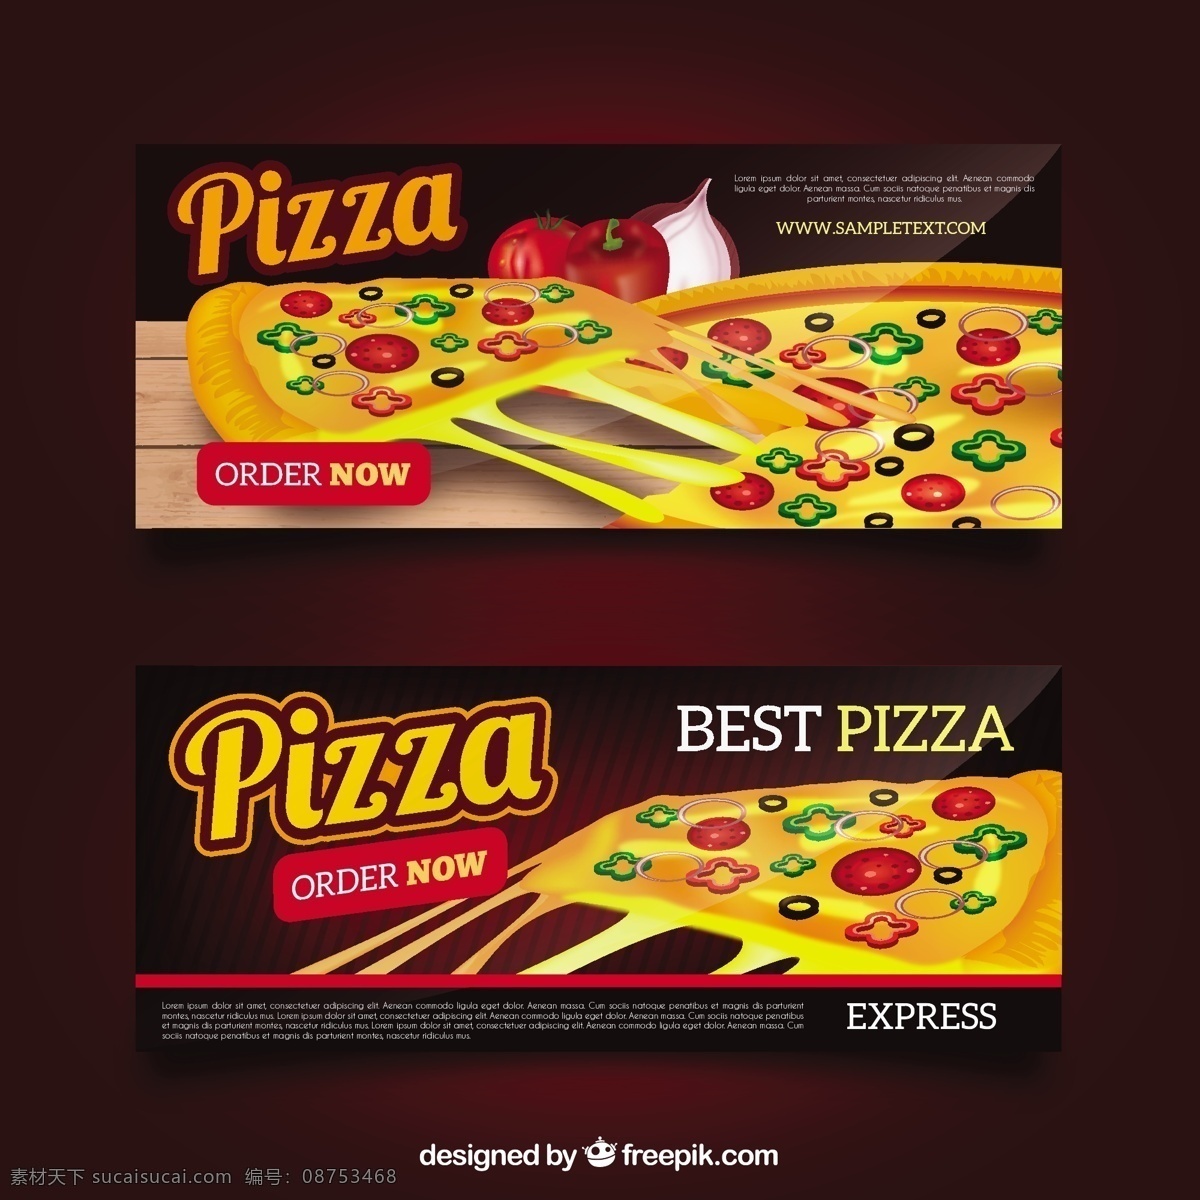 披萨 美食 横幅 海报 披萨海报 卡通披萨 手绘披萨 披萨海报设计 星球 美食海报设计 美食海报 店铺 促销 披萨星球海报